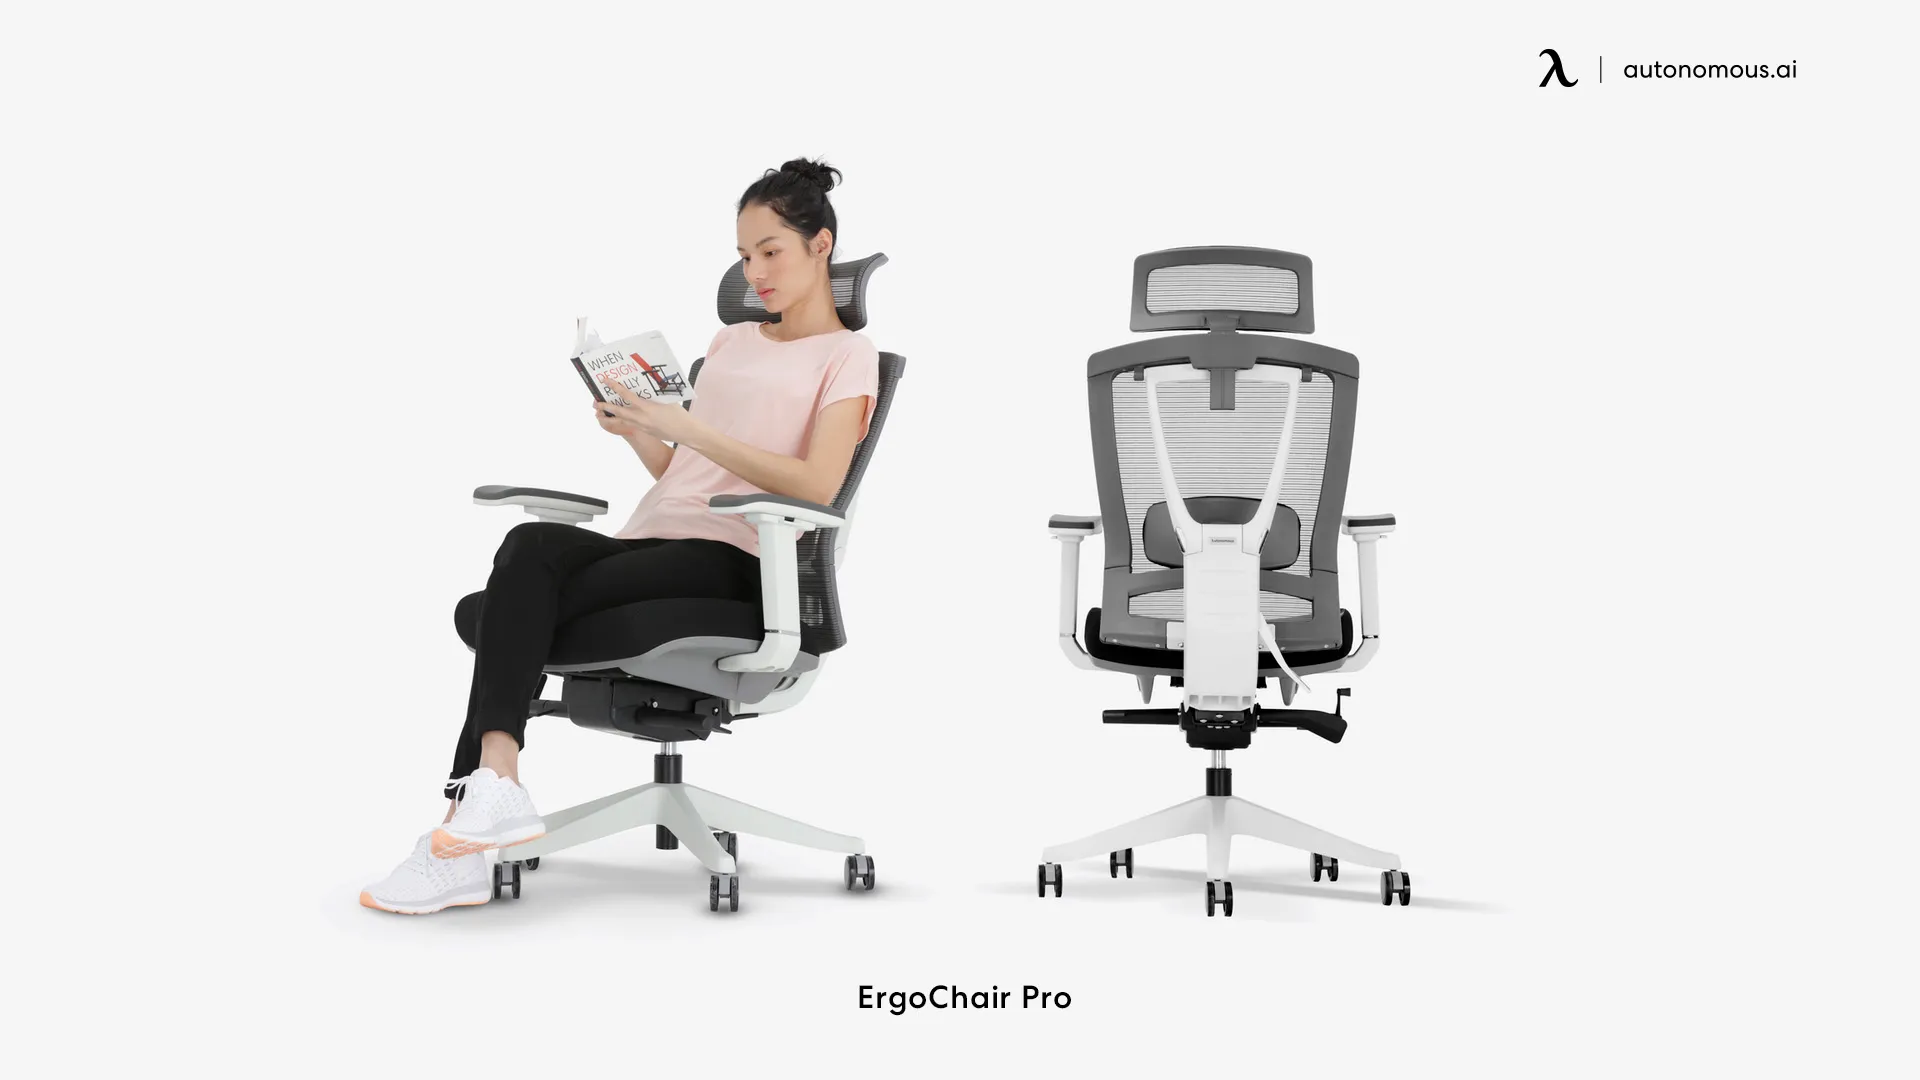 ErgoChair Pro comfy home office chair